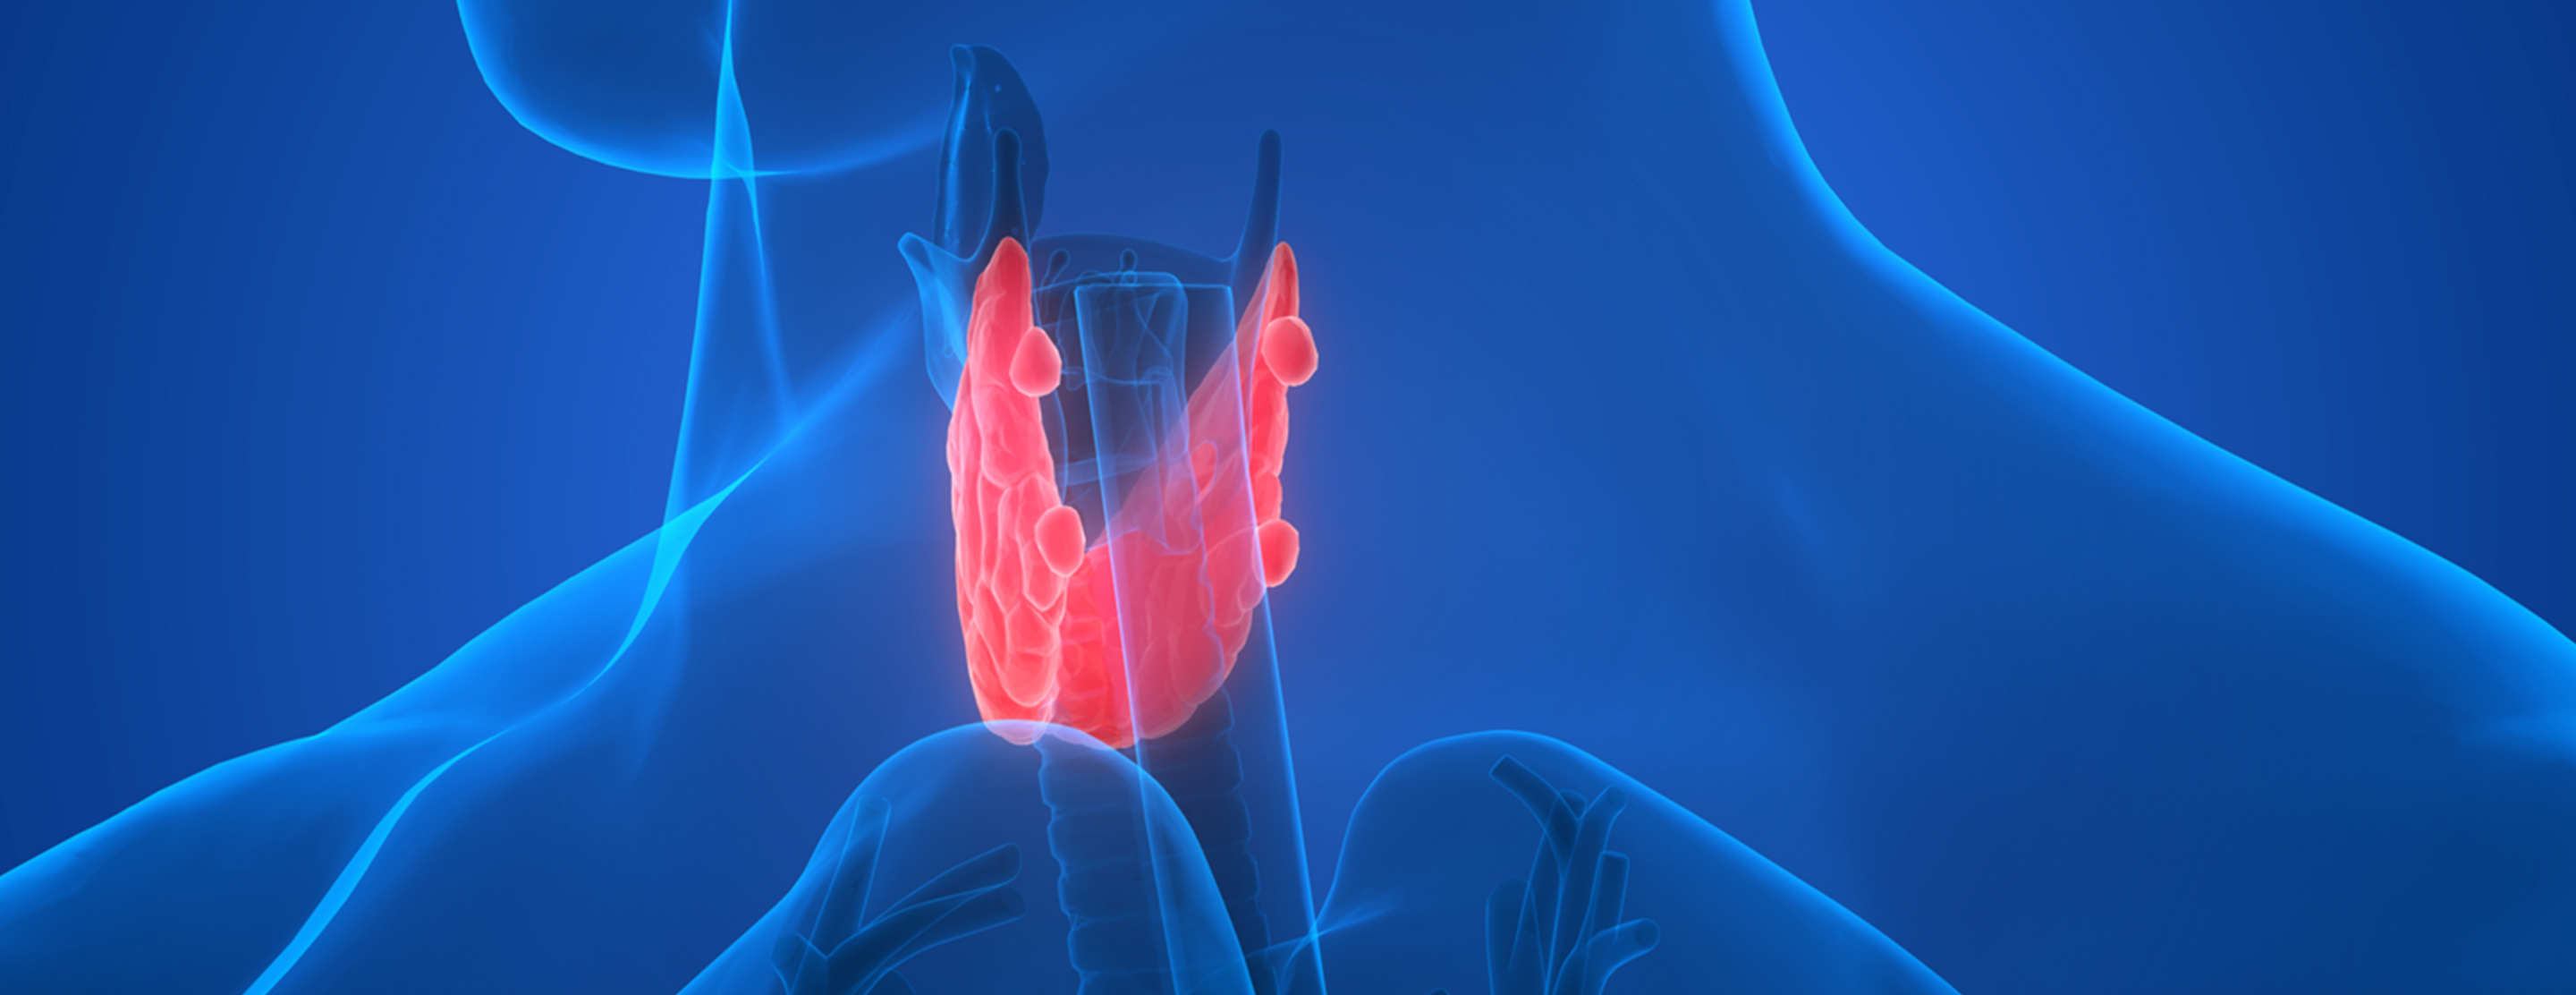 Эндокринология щитовидной железы. Эндокринология щитовидная железа. Щитовидная железа на синем фоне. Щитовидка реклама.